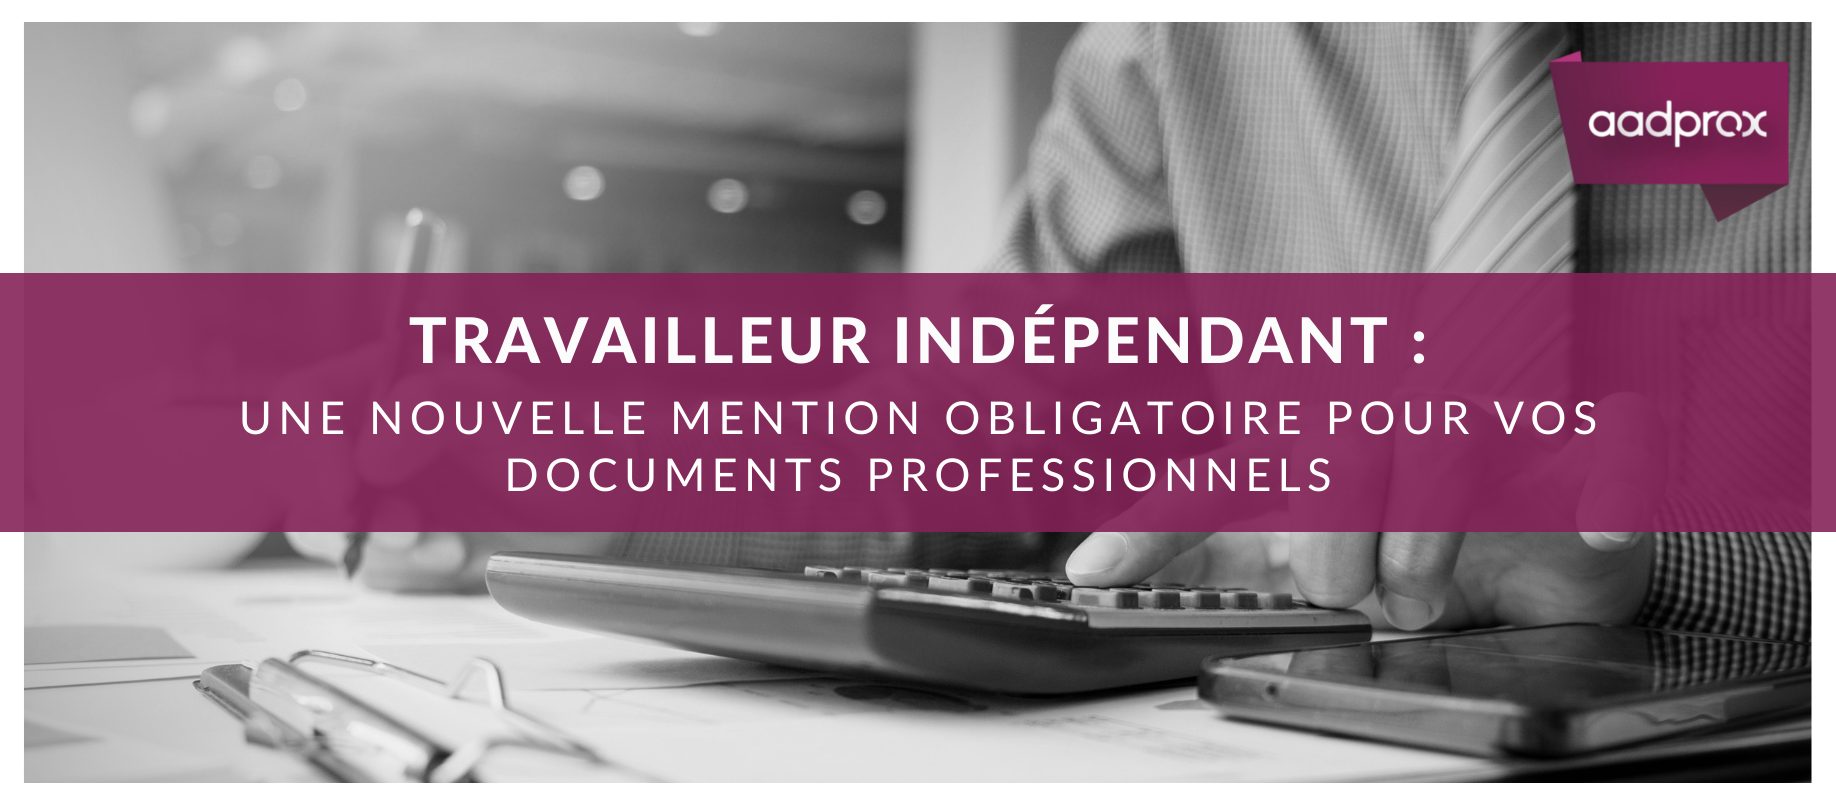 You are currently viewing Travailleur indépendant : Une nouvelle mention obligatoire pour vos documents professionnels